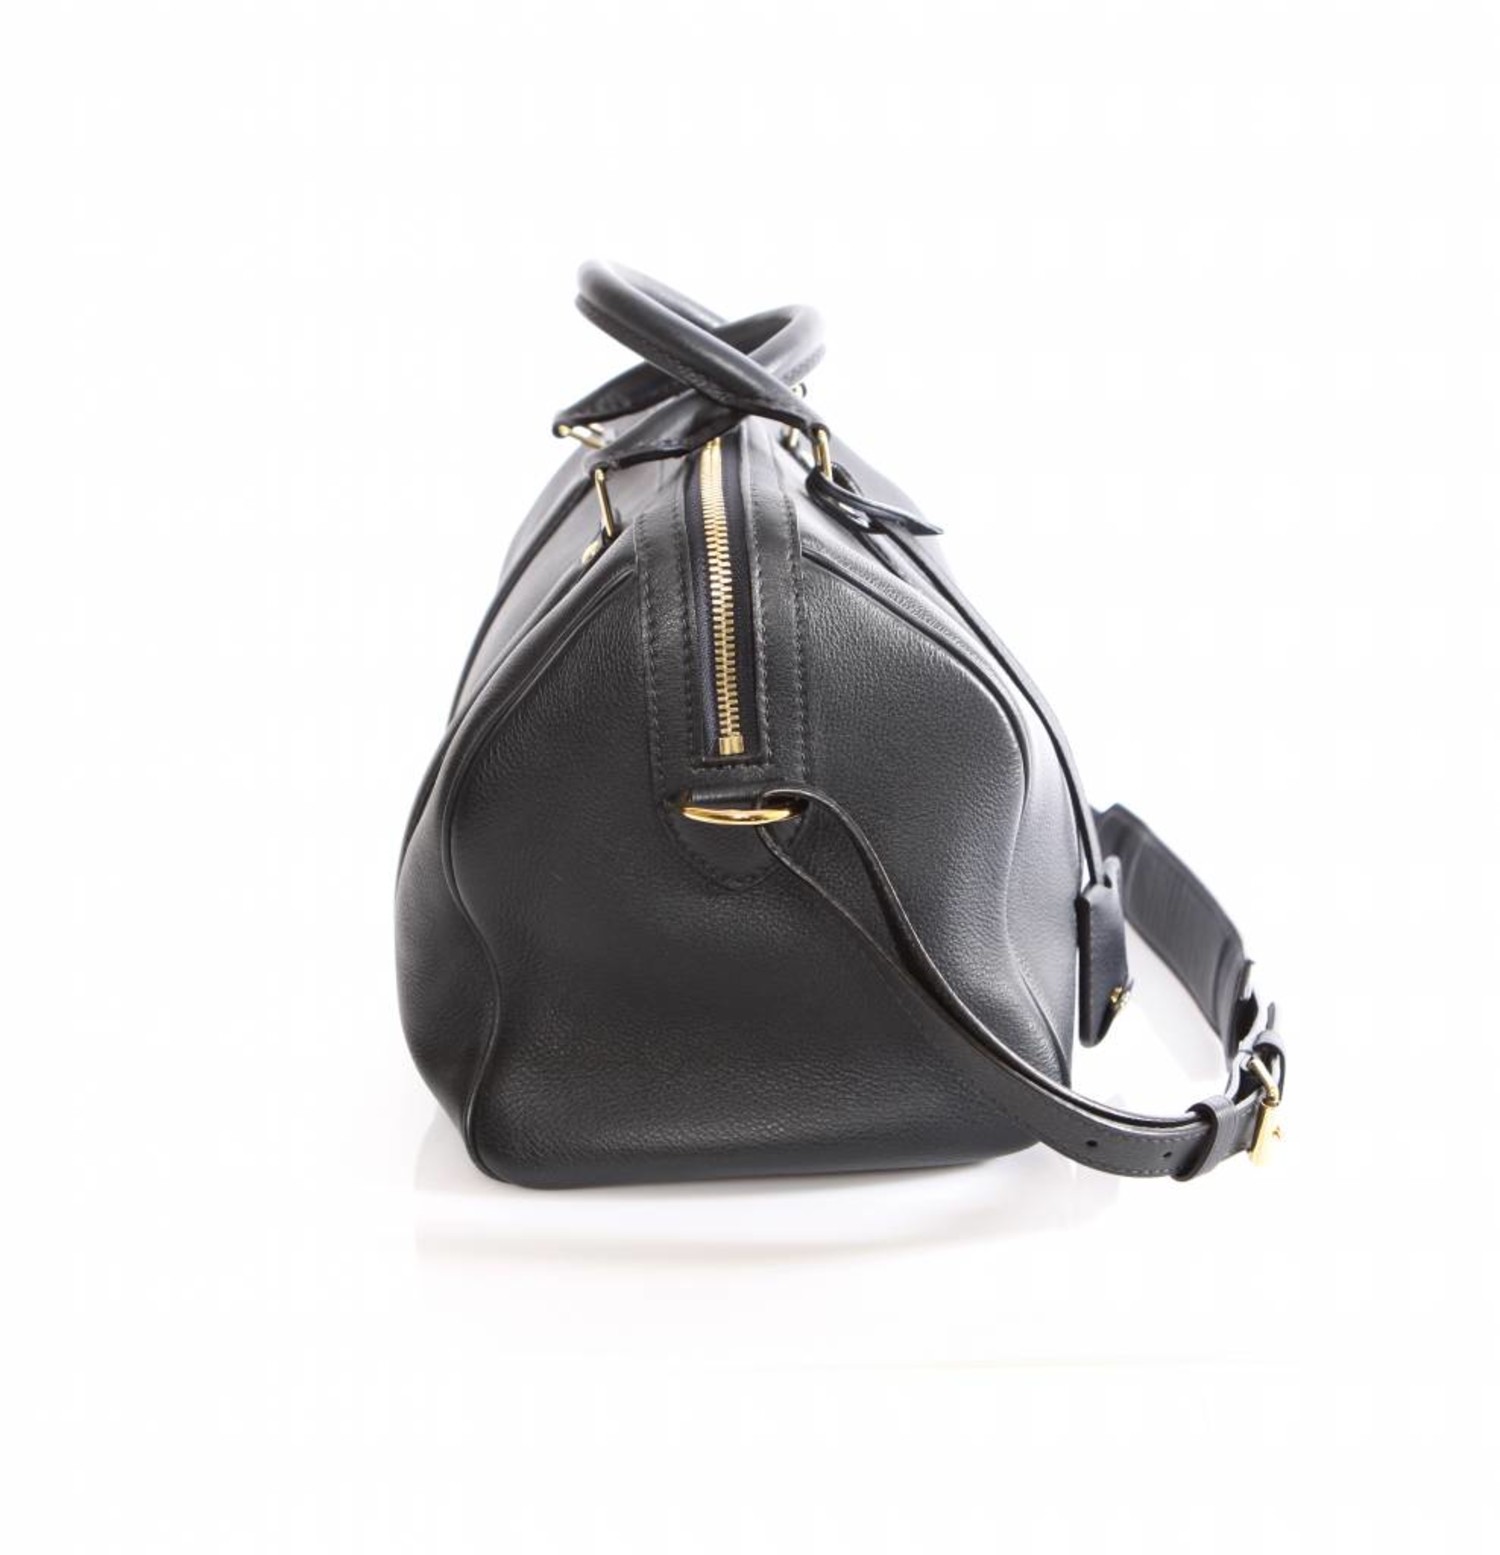 Louis Vuitton Sofia Coppola Bag for Le Bon Marché: Limited Edition